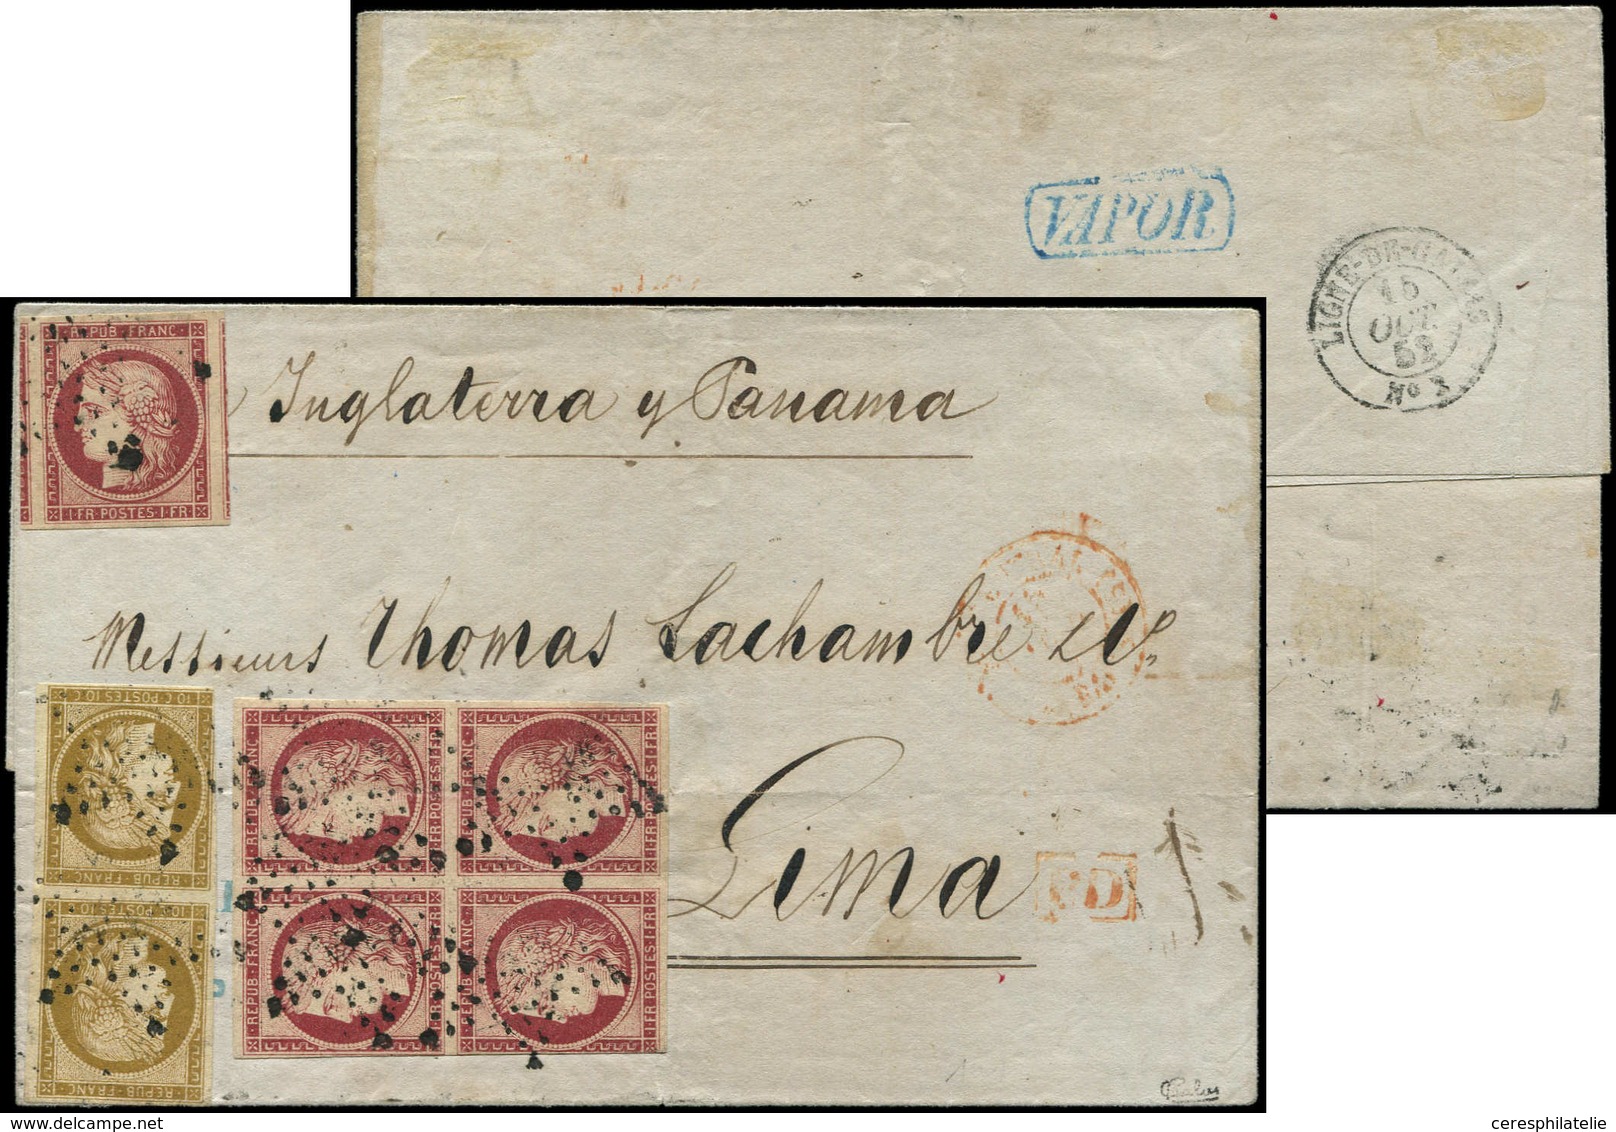 Let EMISSION DE 1849 - 6     1f. Carmin, BLOC De 4 Touché + 1 Ex. Superbe, N°1b 10c. Bistre-VERDATRE PAIRE Touchée, Tous - 1849-1850 Ceres